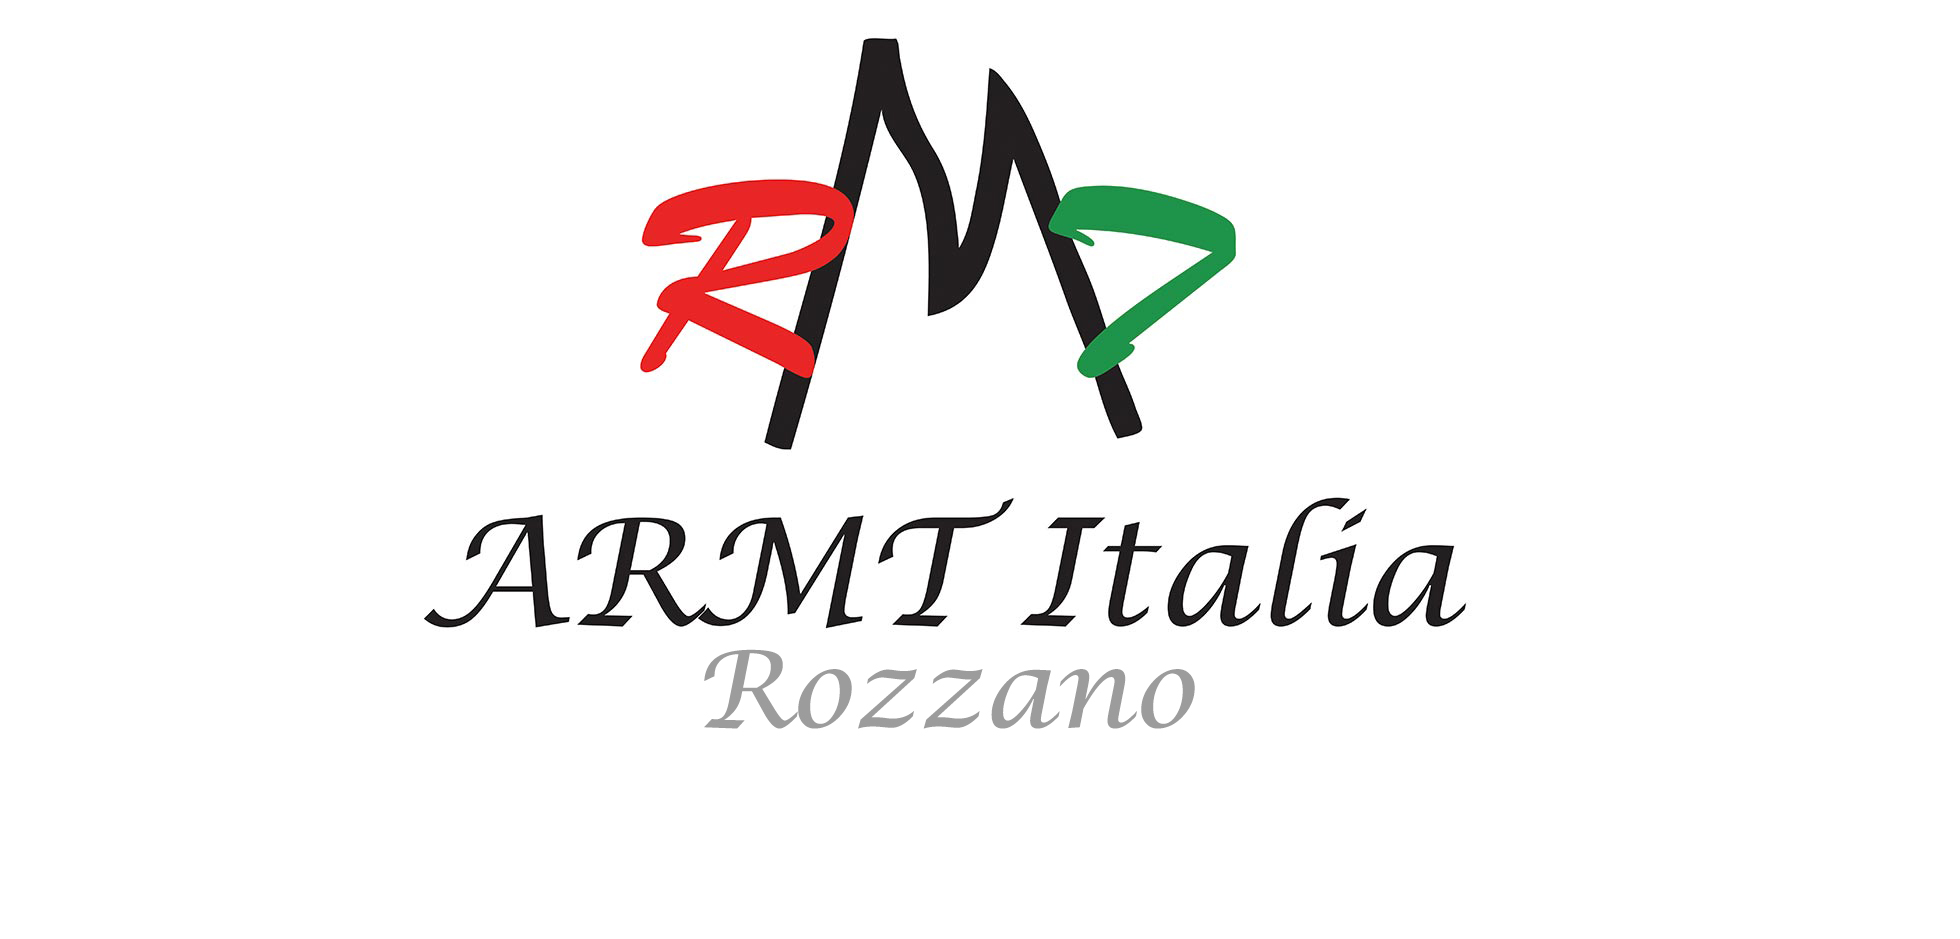 ARMT Italia (Rozzano)